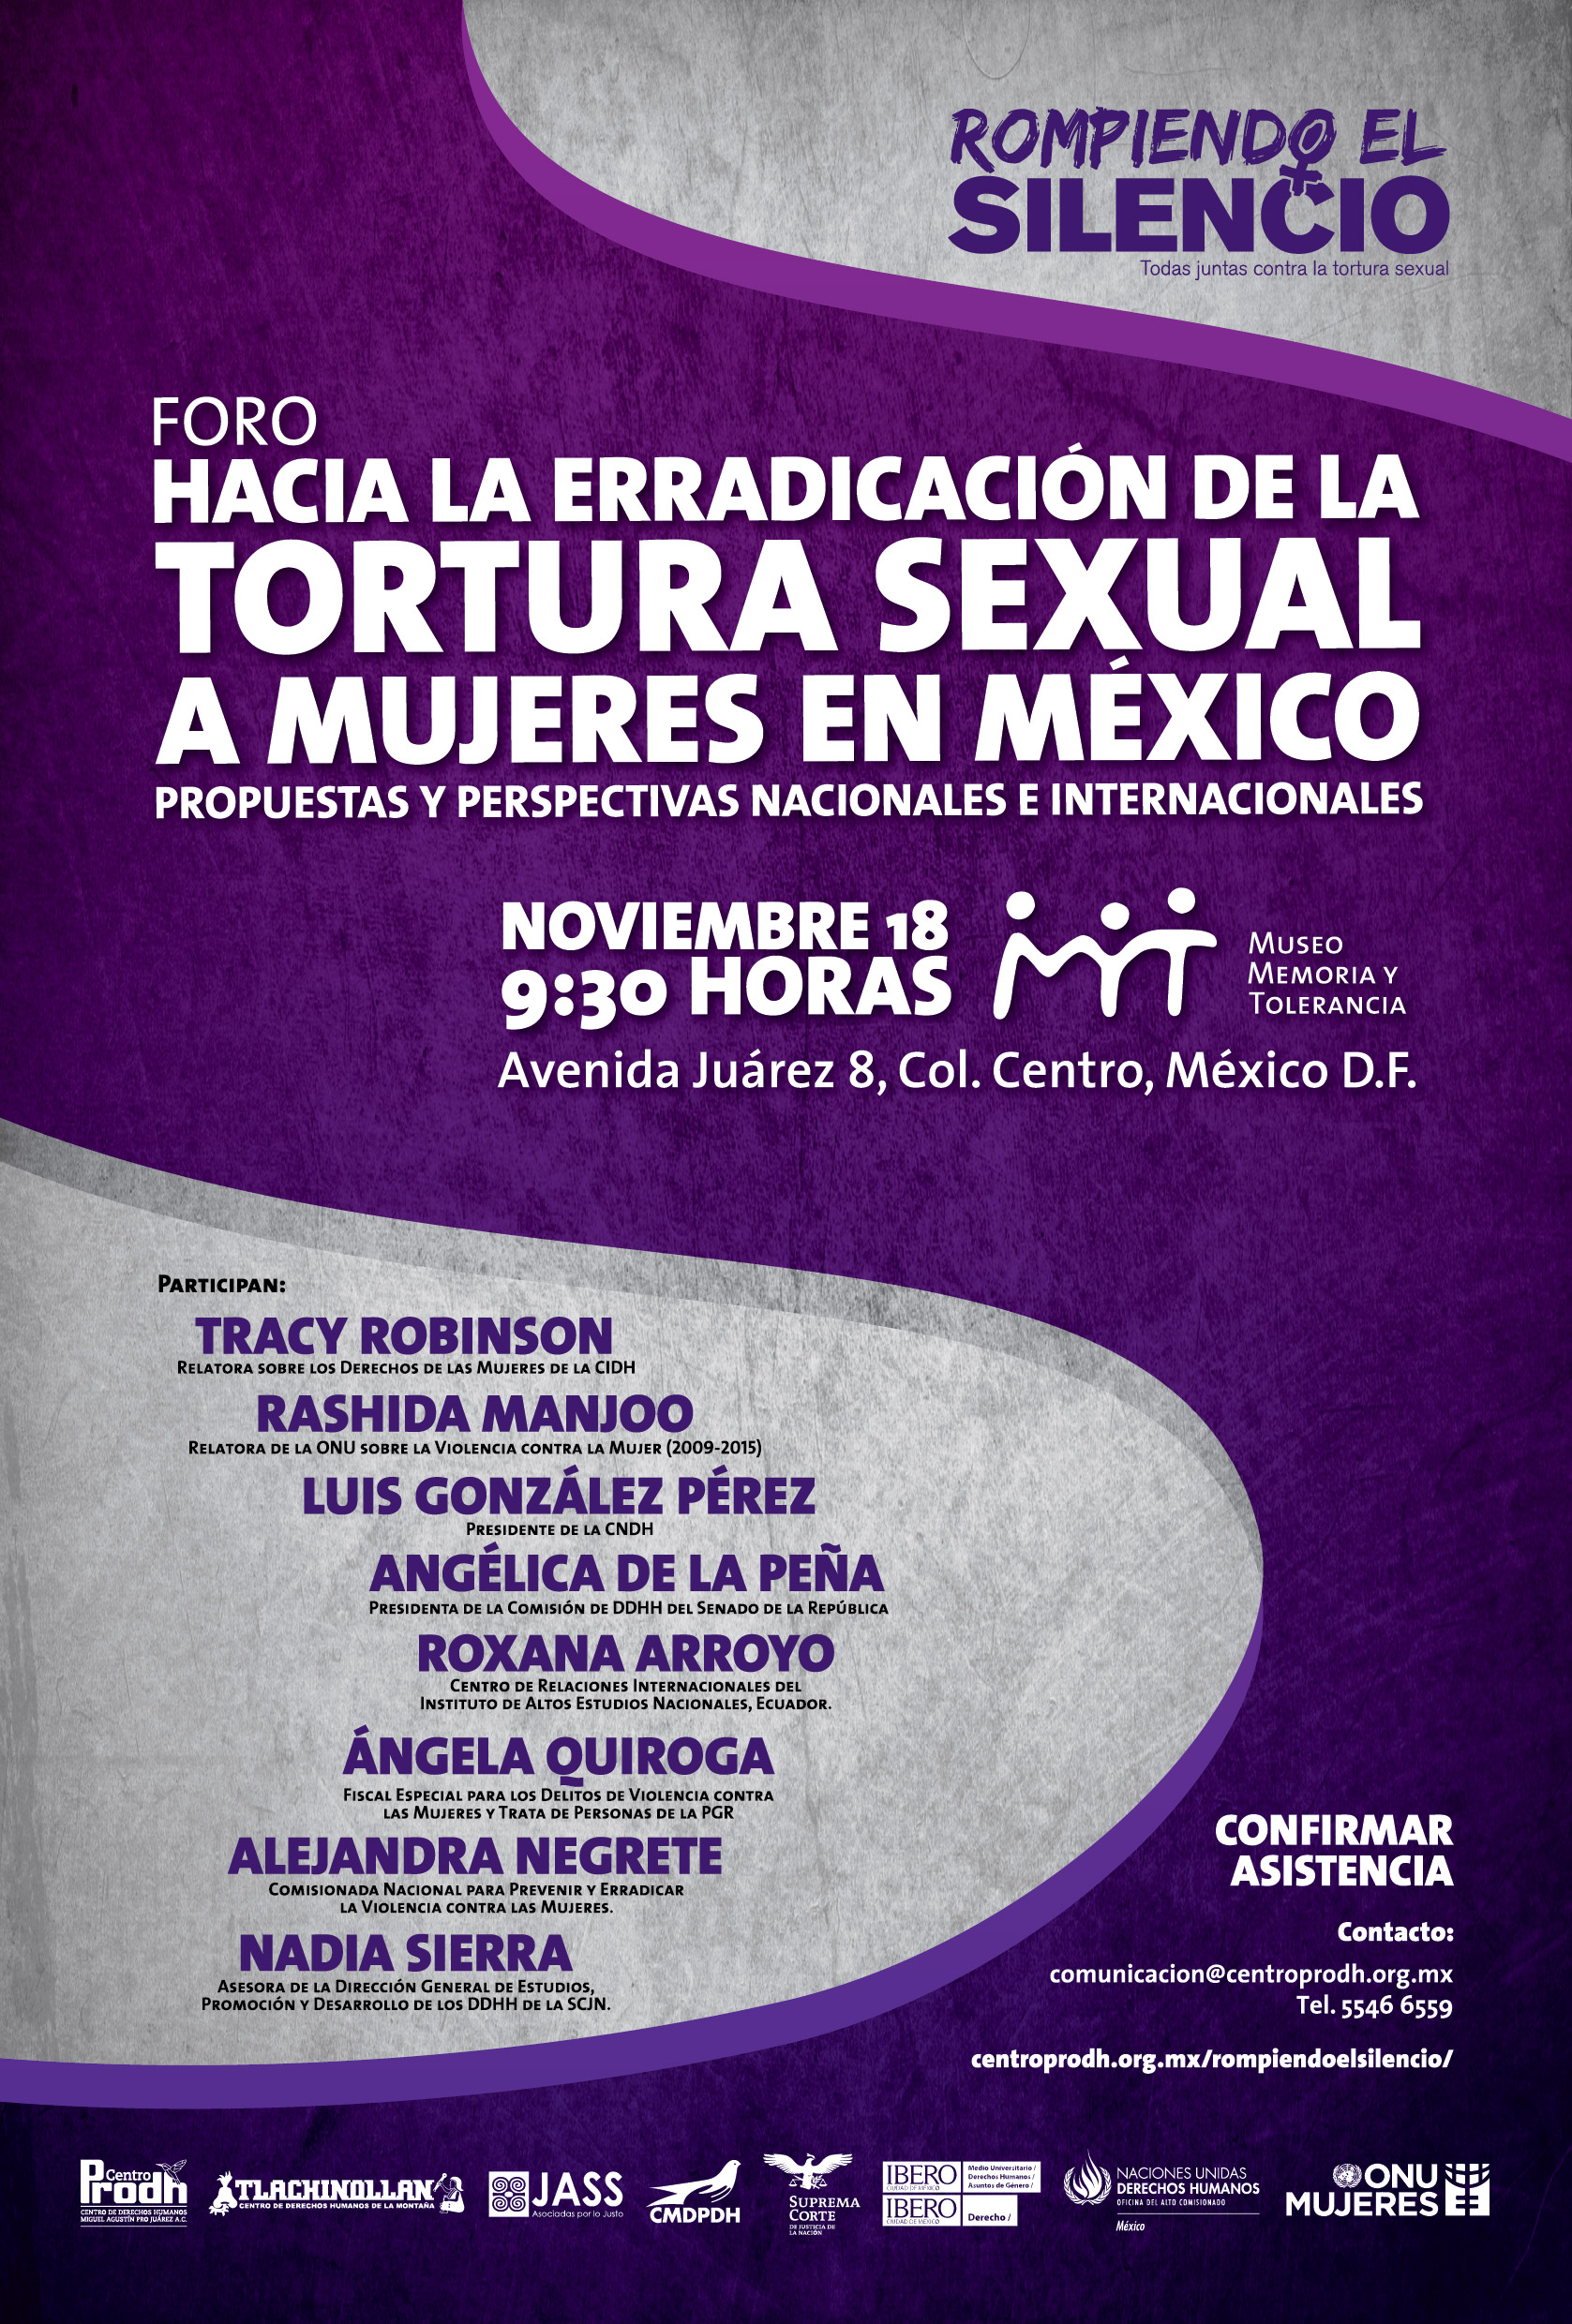 Foro: Hacia la erradicación de la tortura sexual en México